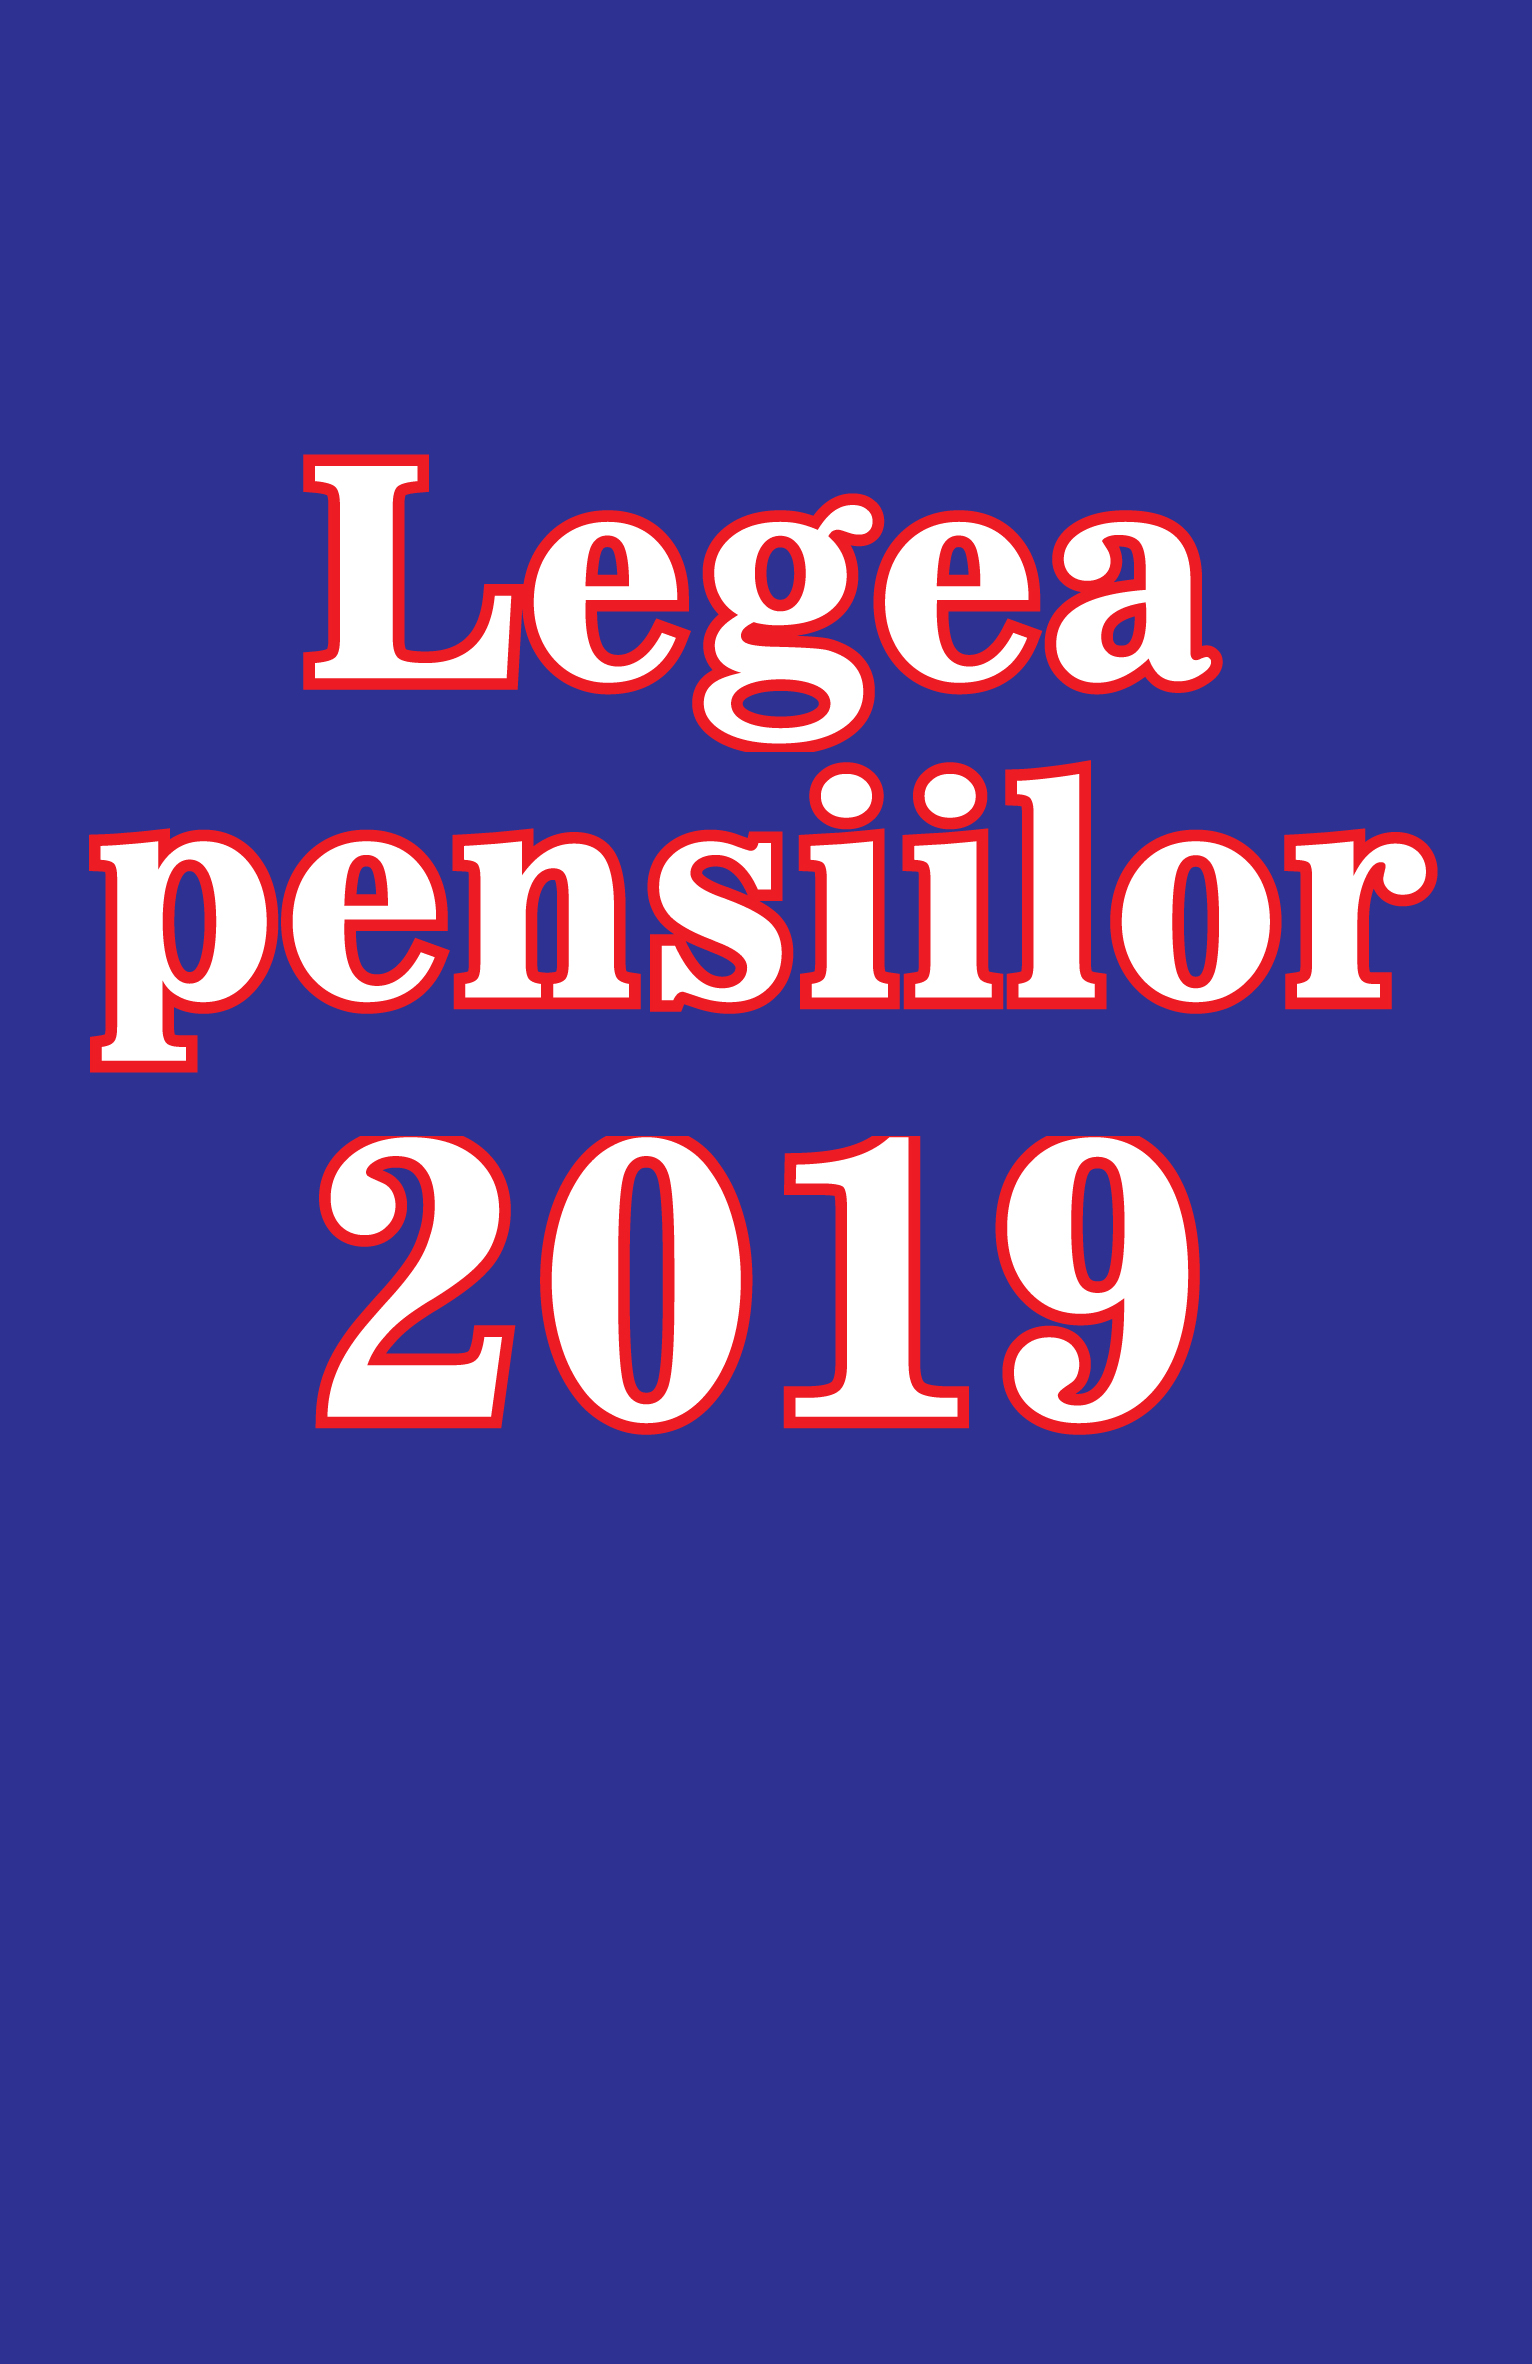 Legea pensiilor 2019